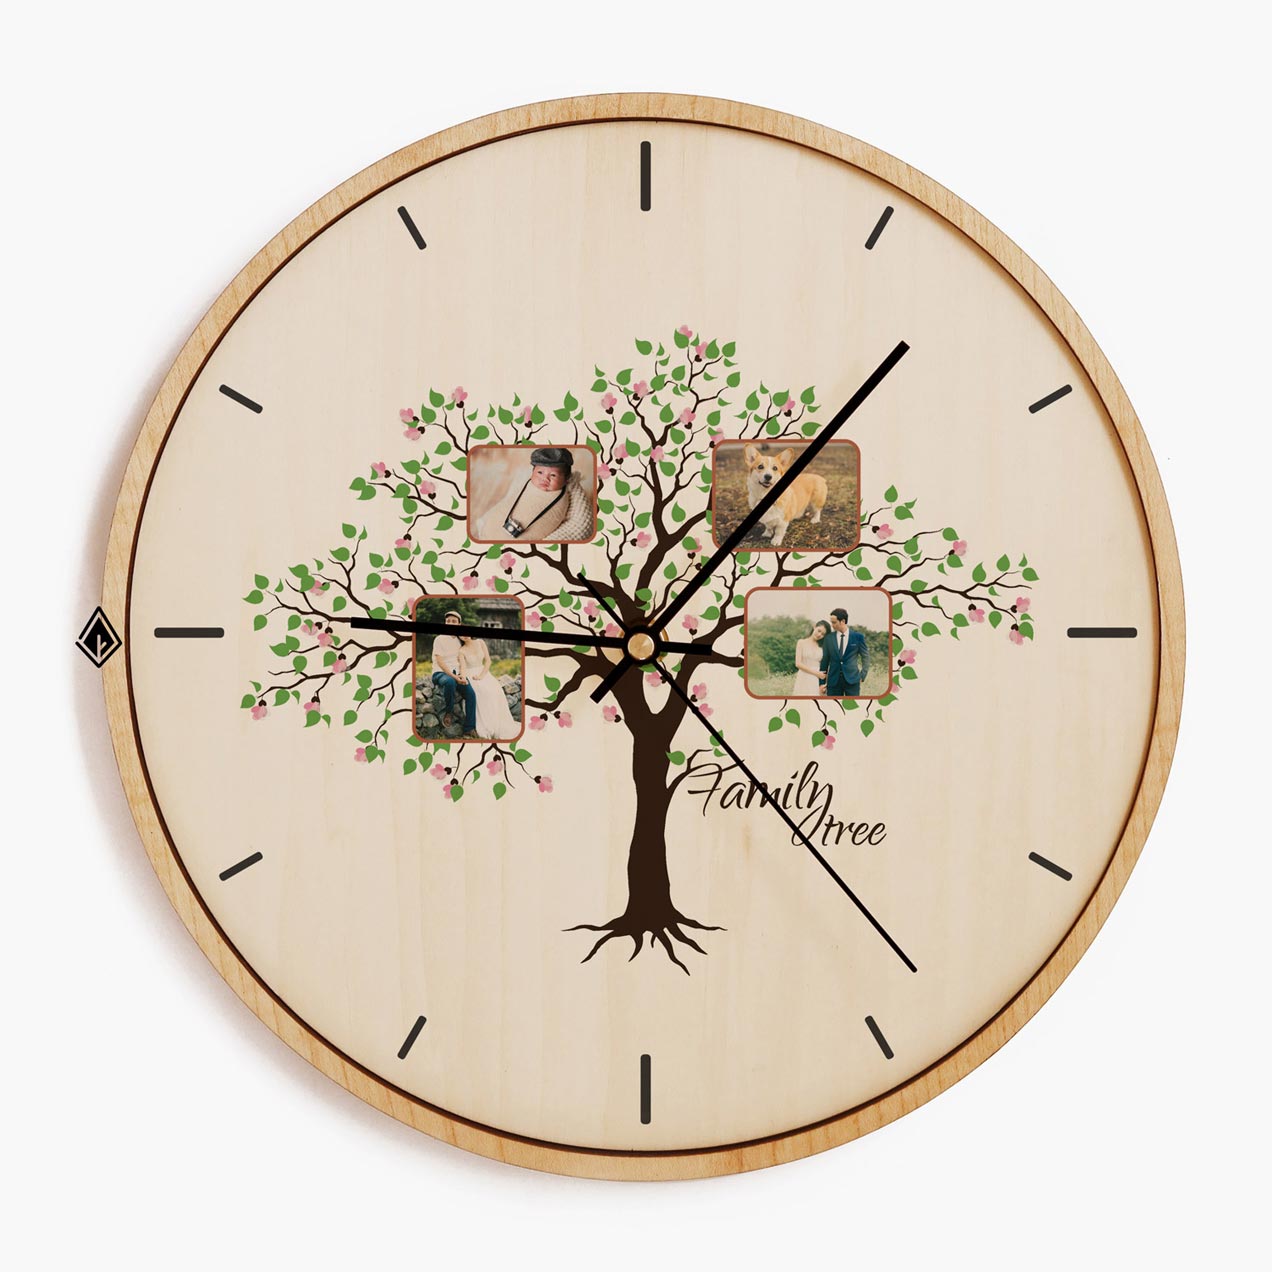 Wooden Wall Clocks Family tree